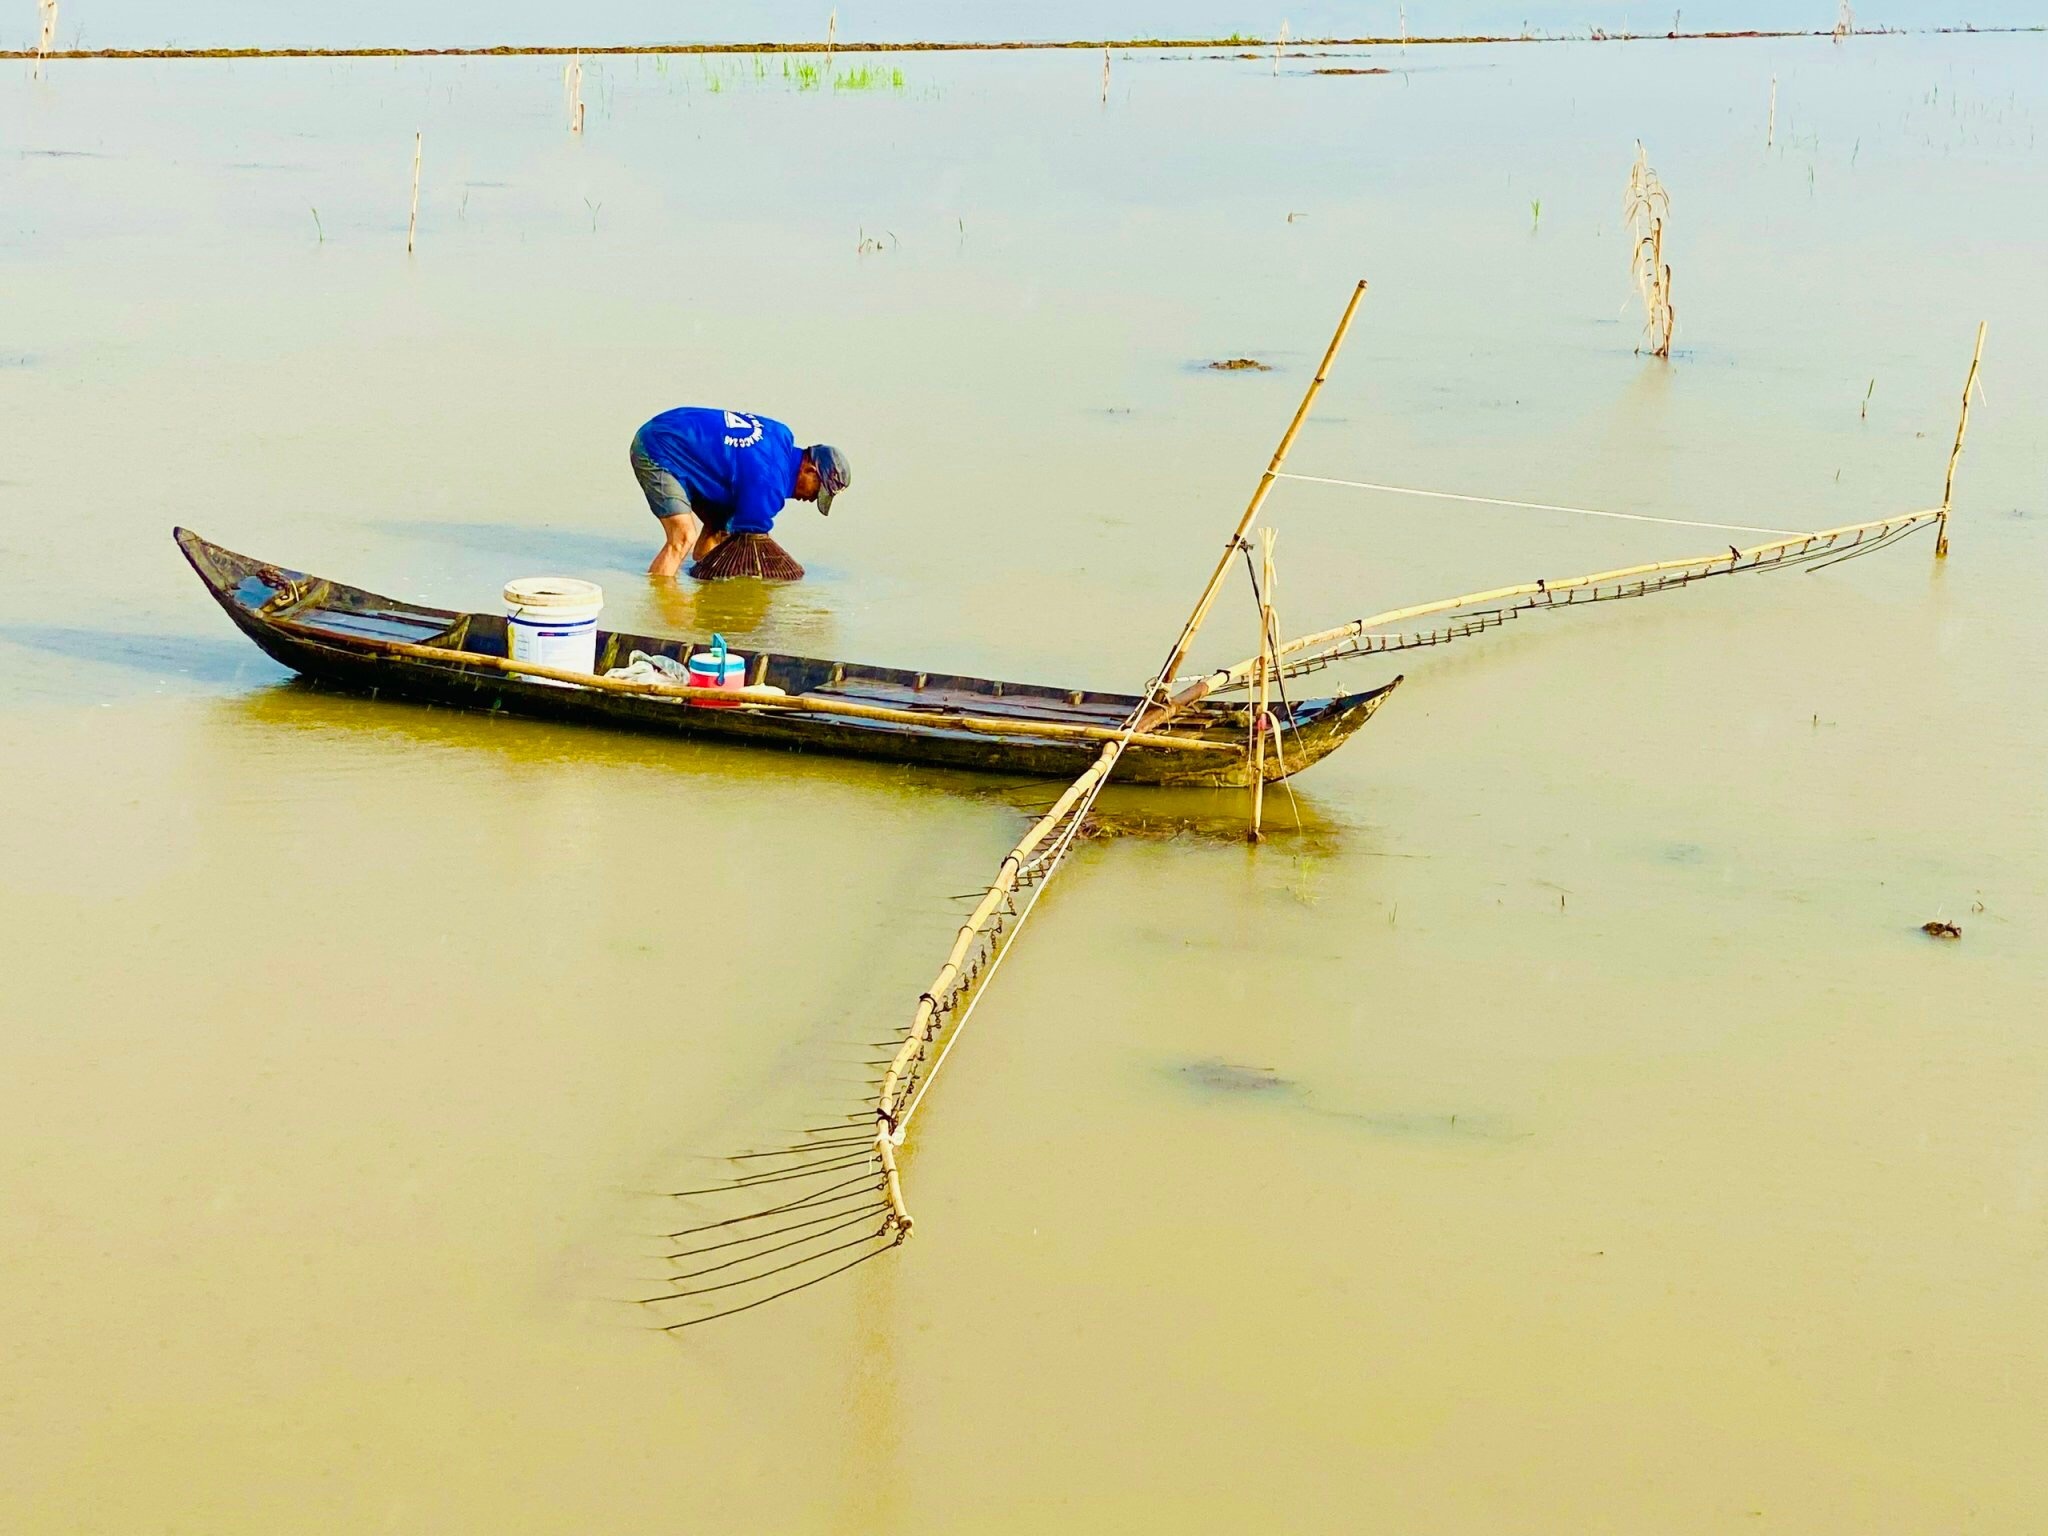 Hạn hán ở Trung Quốc tác động đến mùa lũ sông Mê Kông - ảnh 1